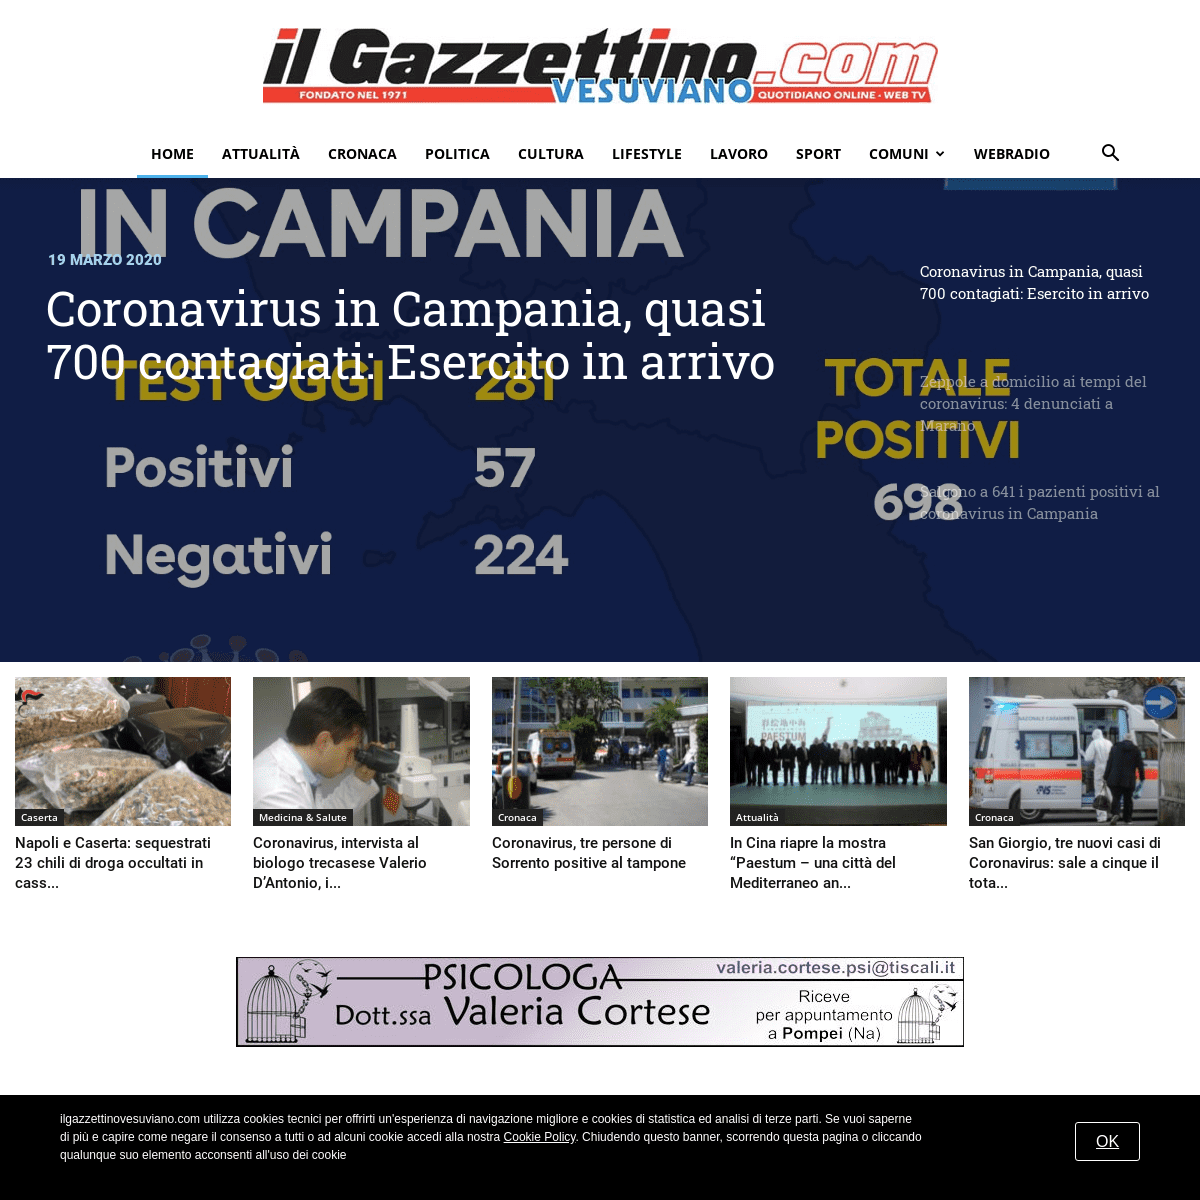 A complete backup of ilgazzettinovesuviano.com